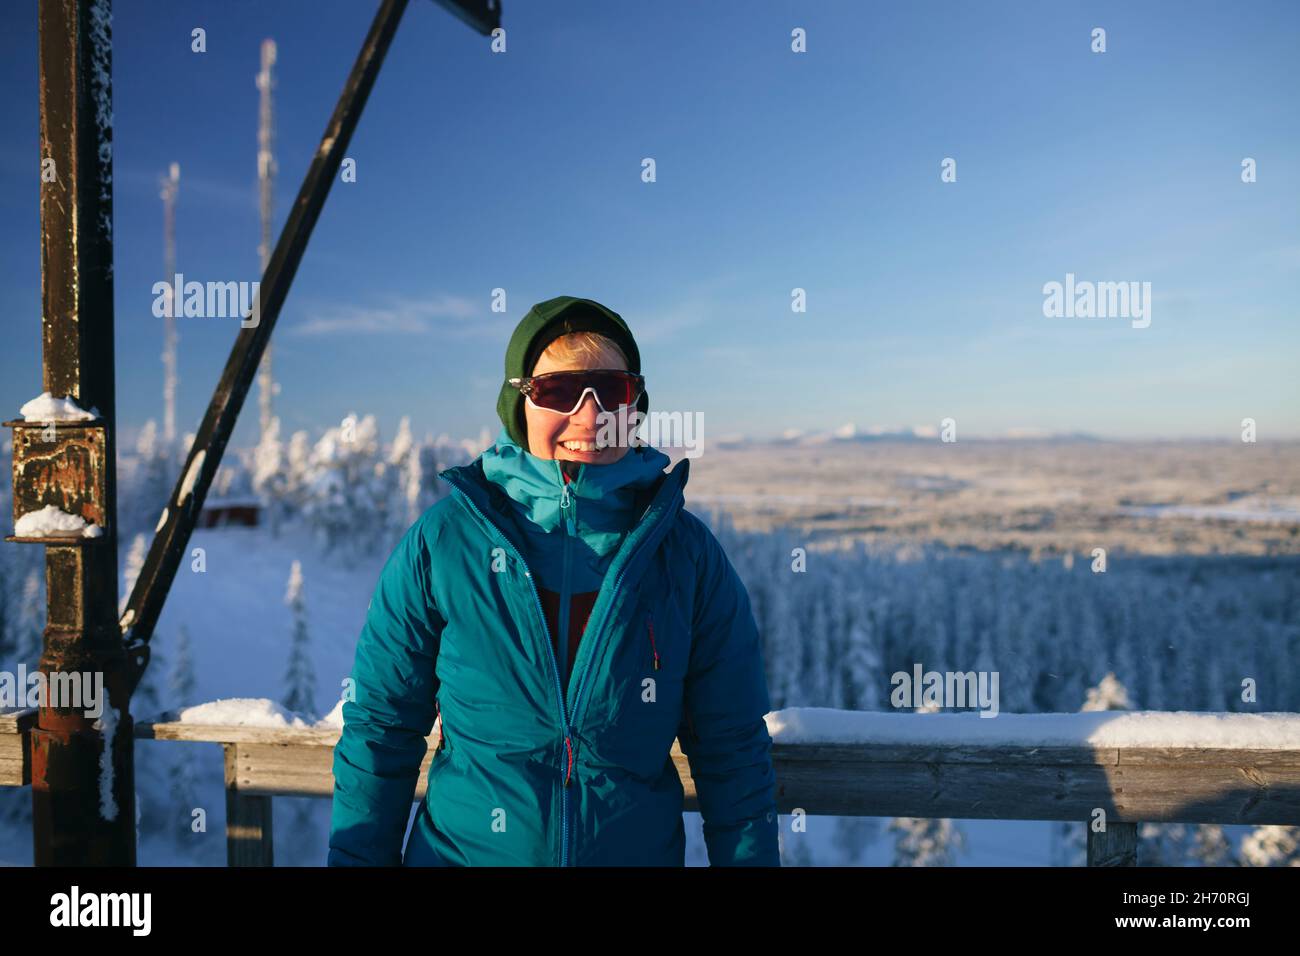 Portrait of smiling woman against winter landscape Stock Photo